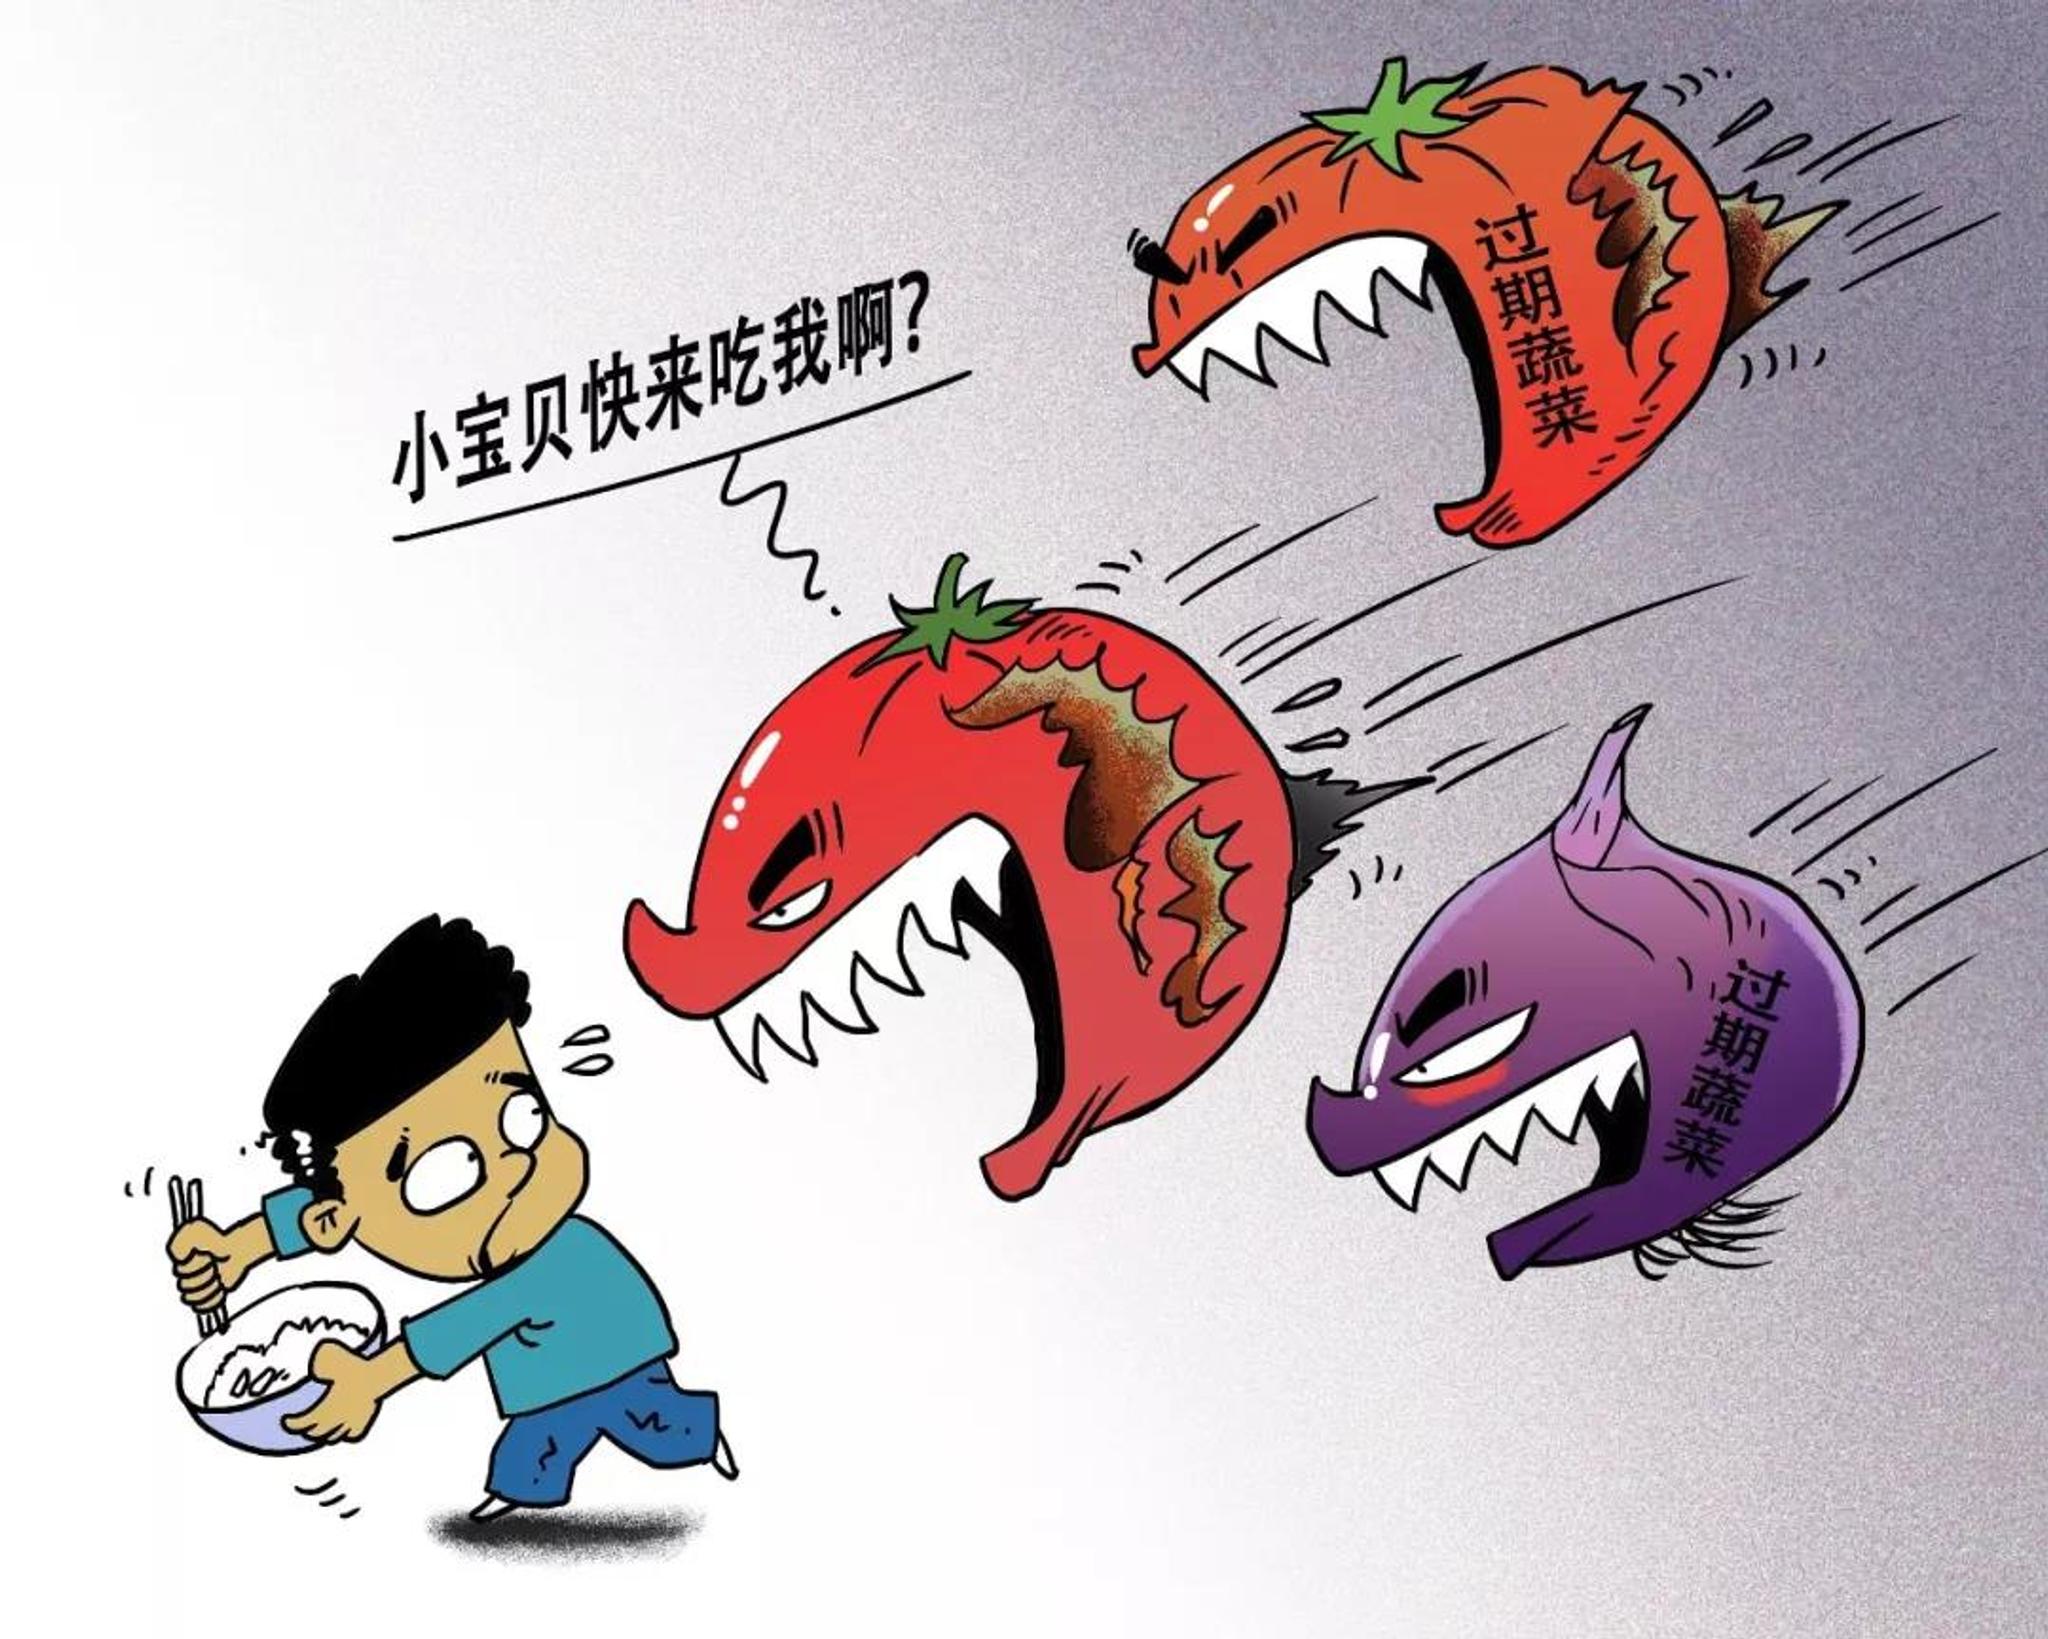 上海中芯学校食品霉变 供应商被立案调查 校长被免职